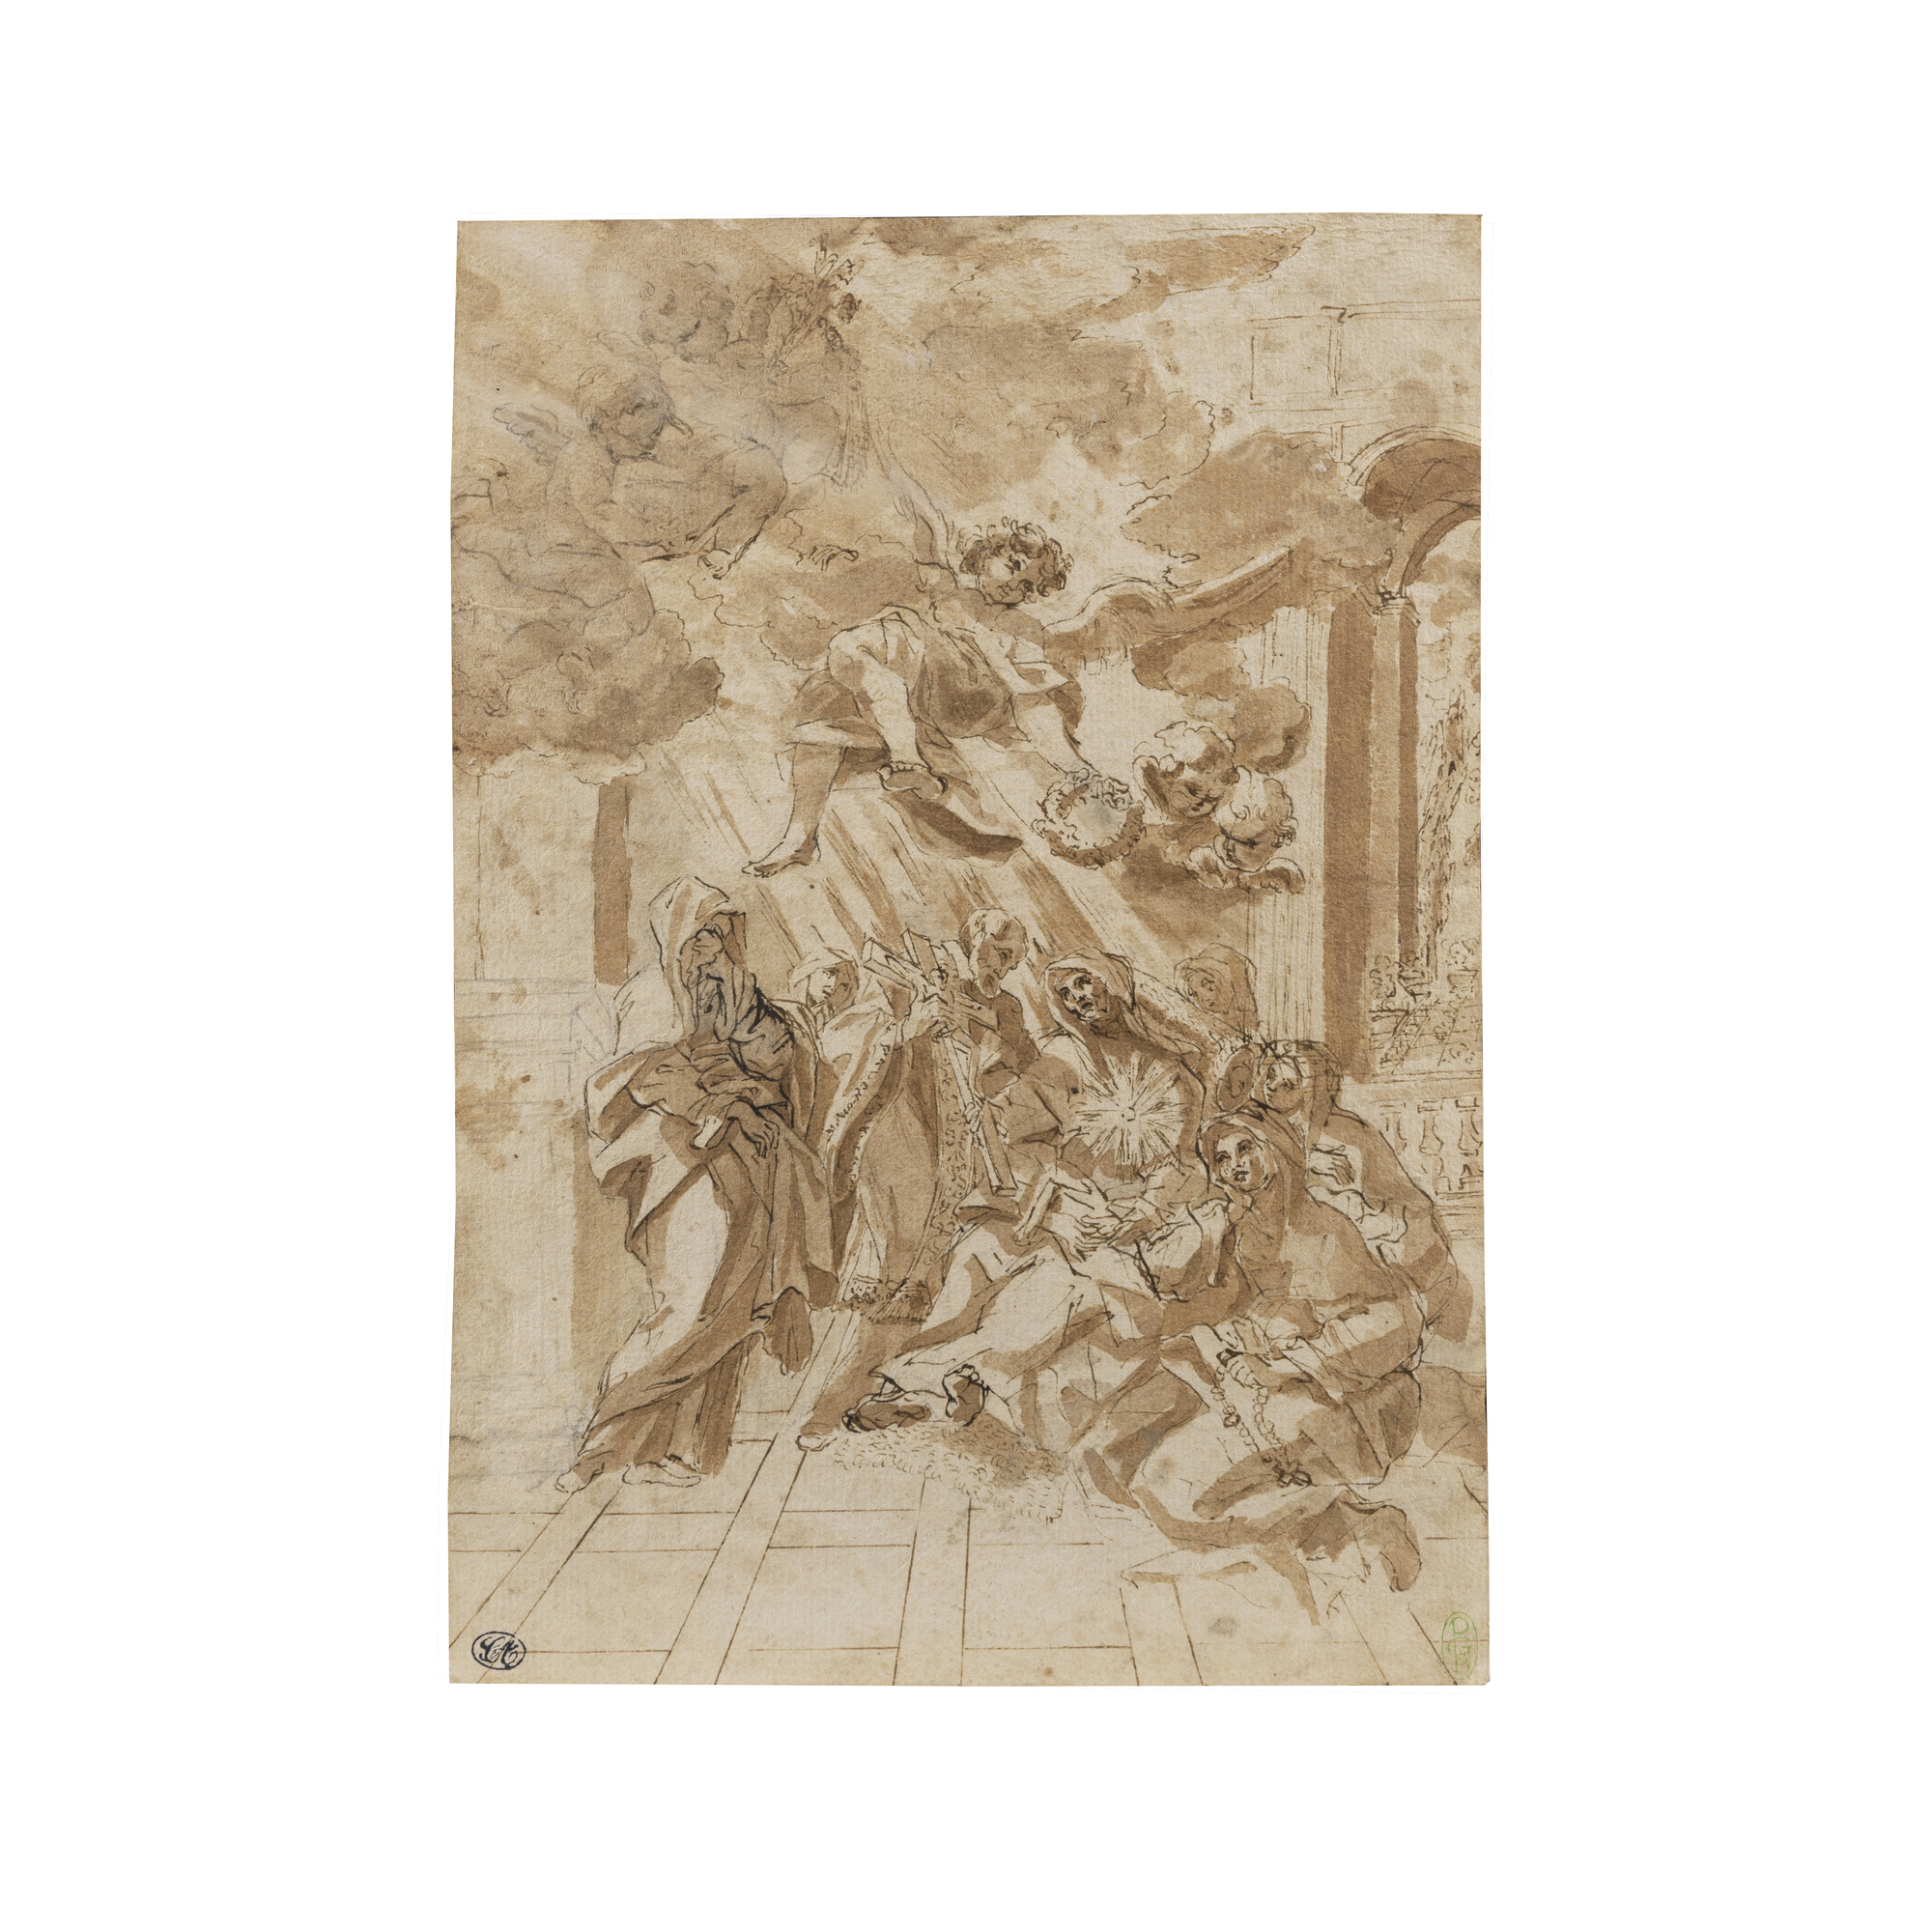 Raffaello Vanni (Siena 1587 - 1657) attribuito